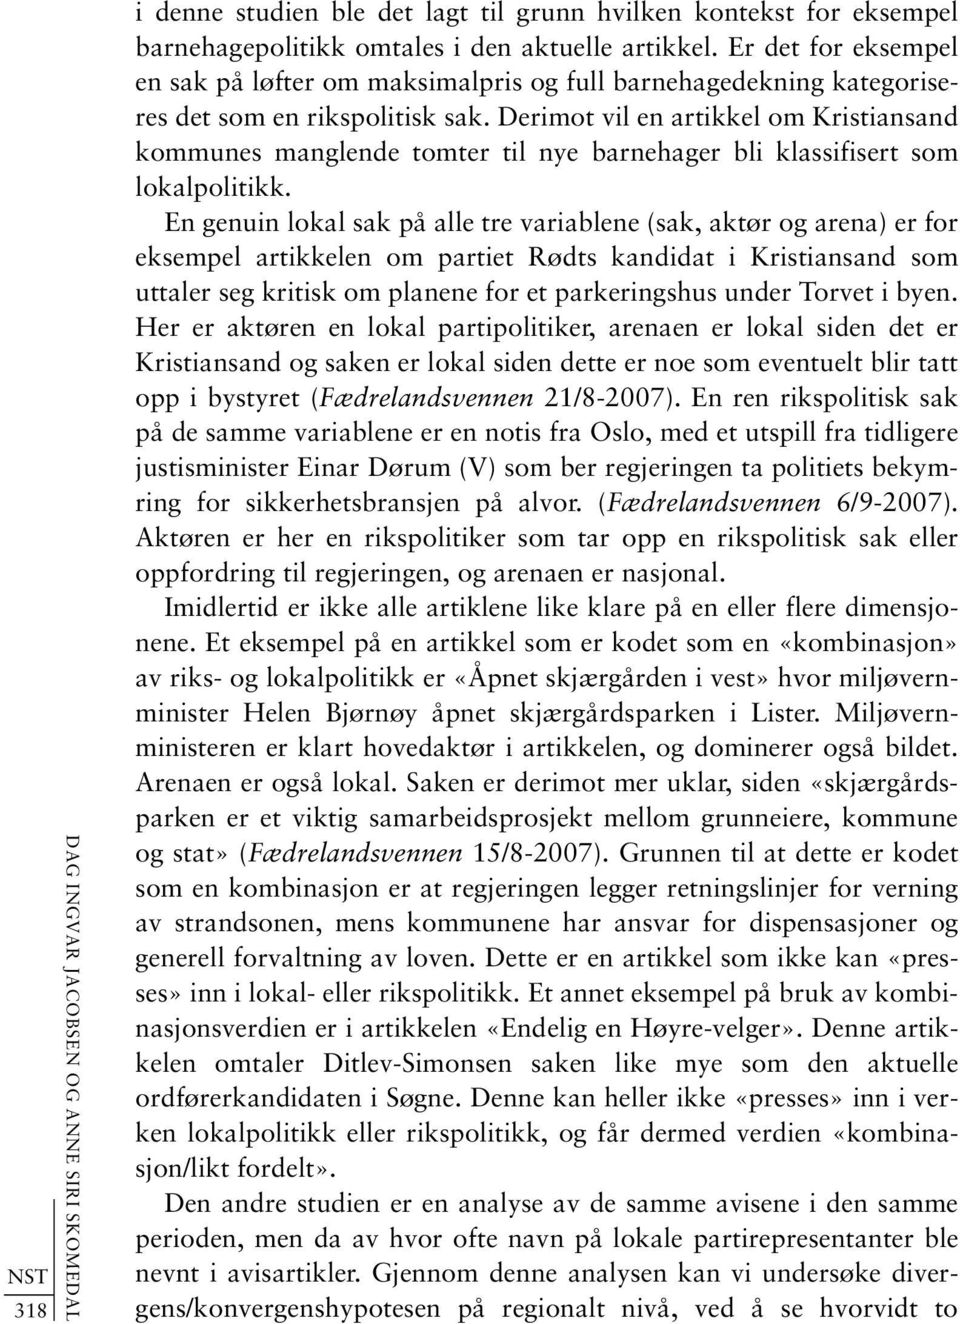 Derimot vil en artikkel om Kristiansand kommunes manglende tomter til nye barnehager bli klassifisert som lokalpolitikk.